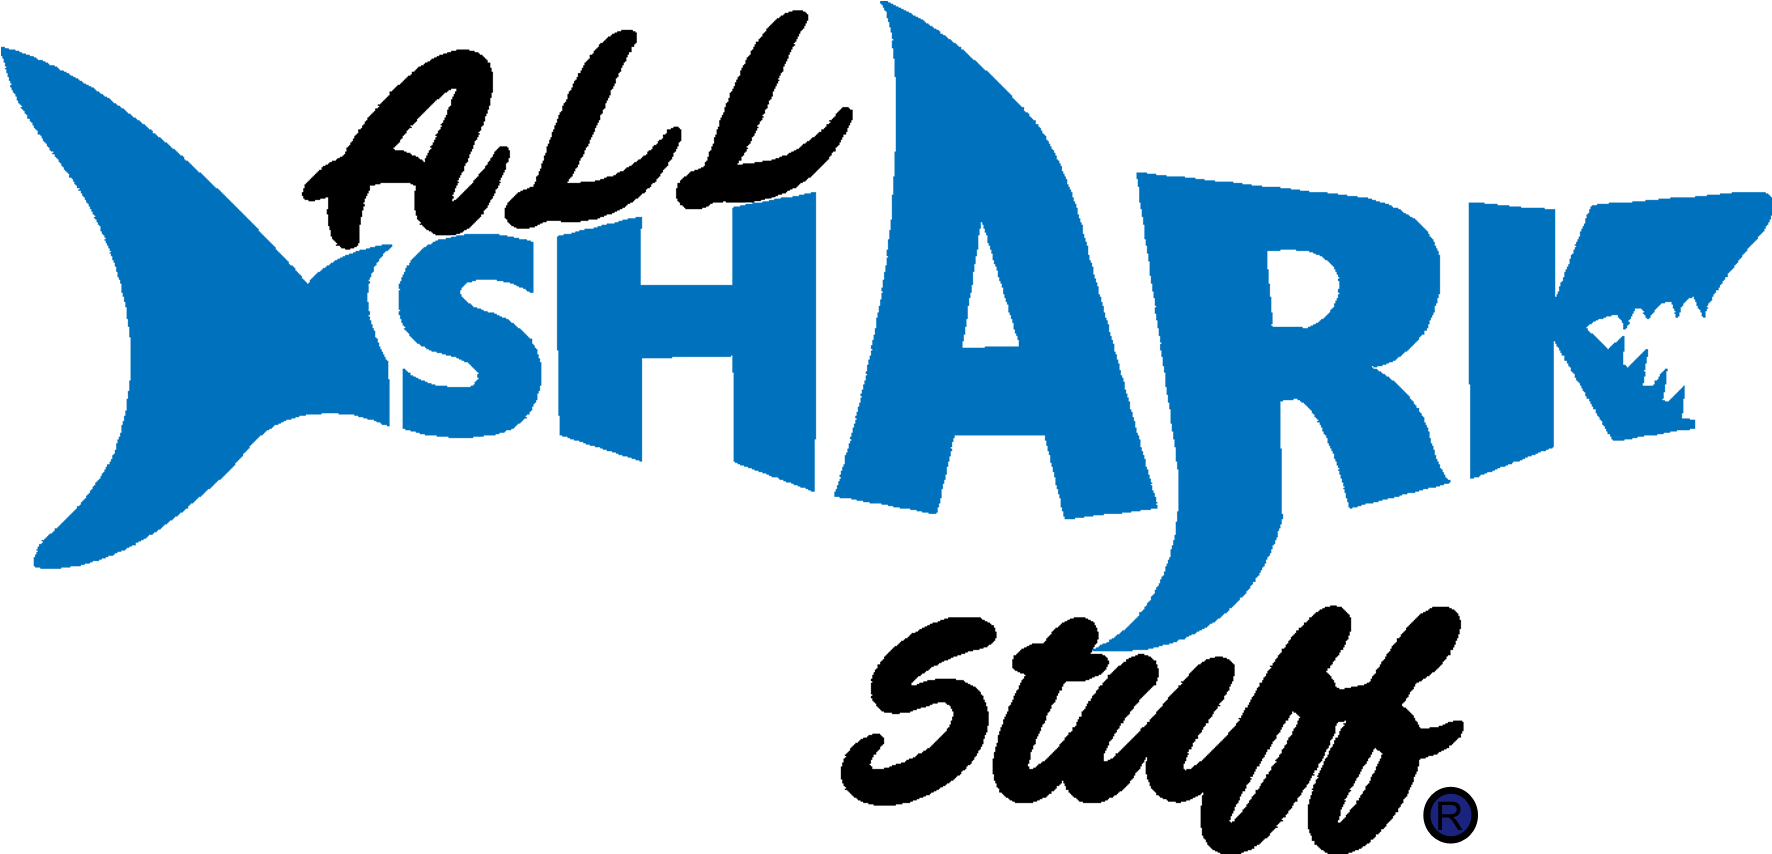 All Shark Stuff Logo PNG